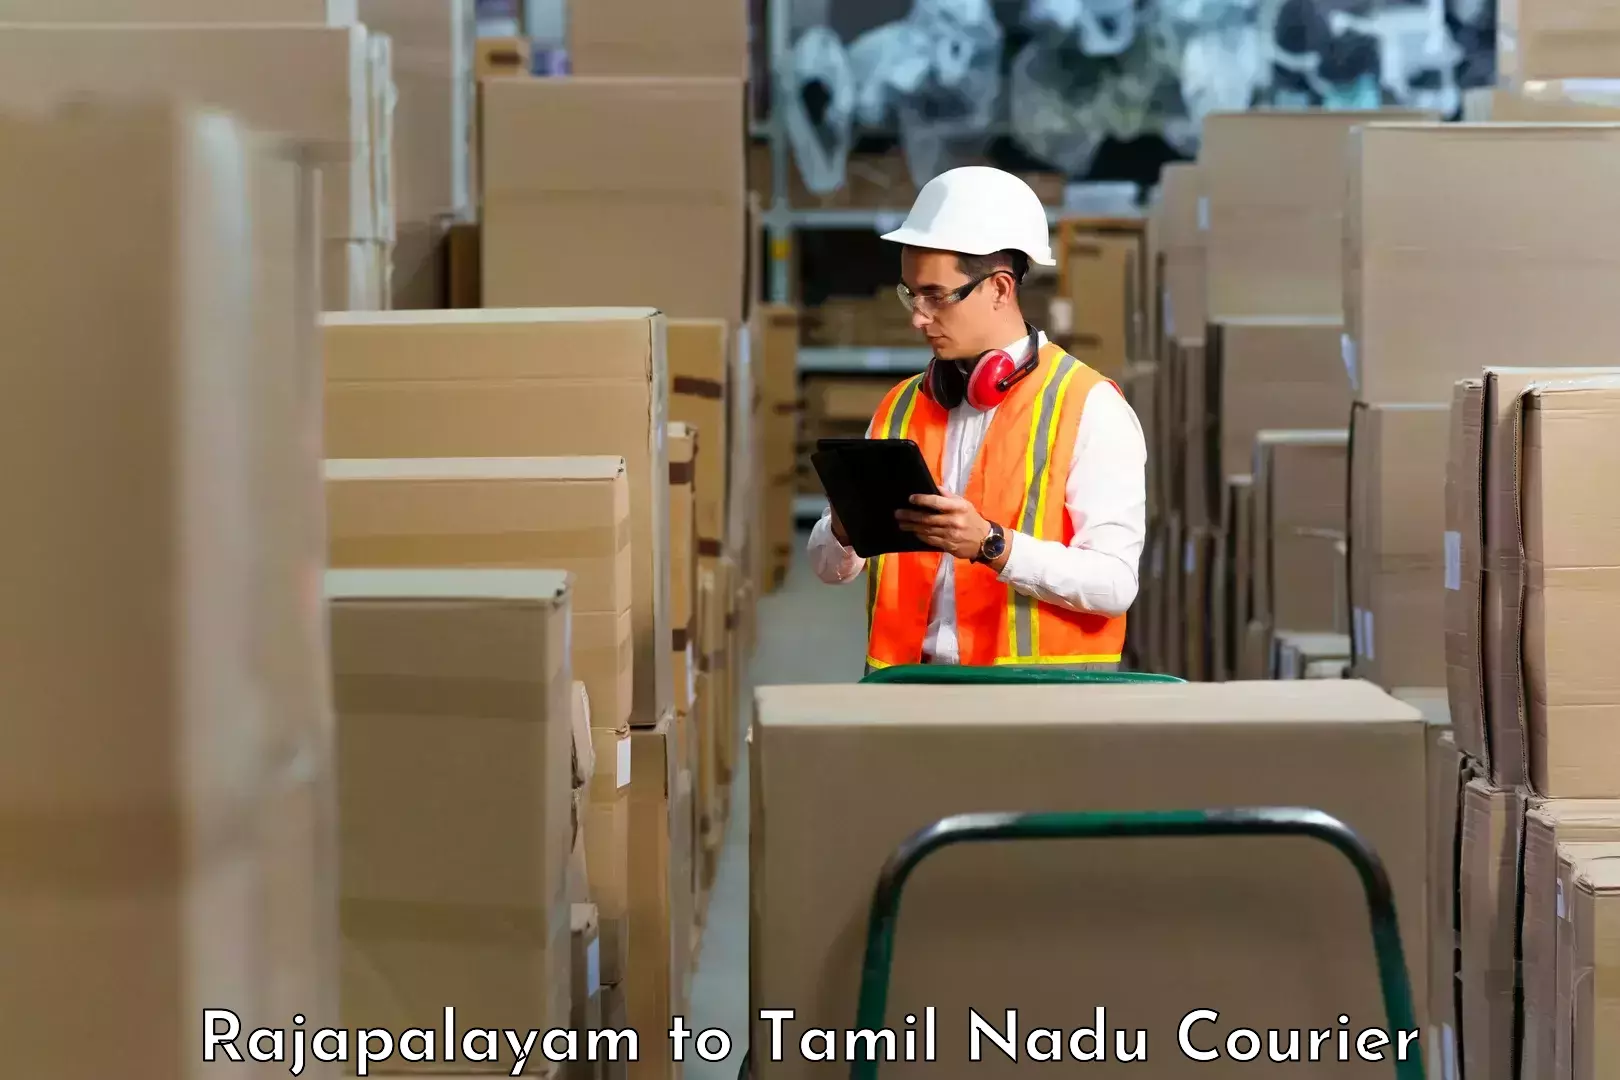 High-capacity parcel service Rajapalayam to Kodumudi